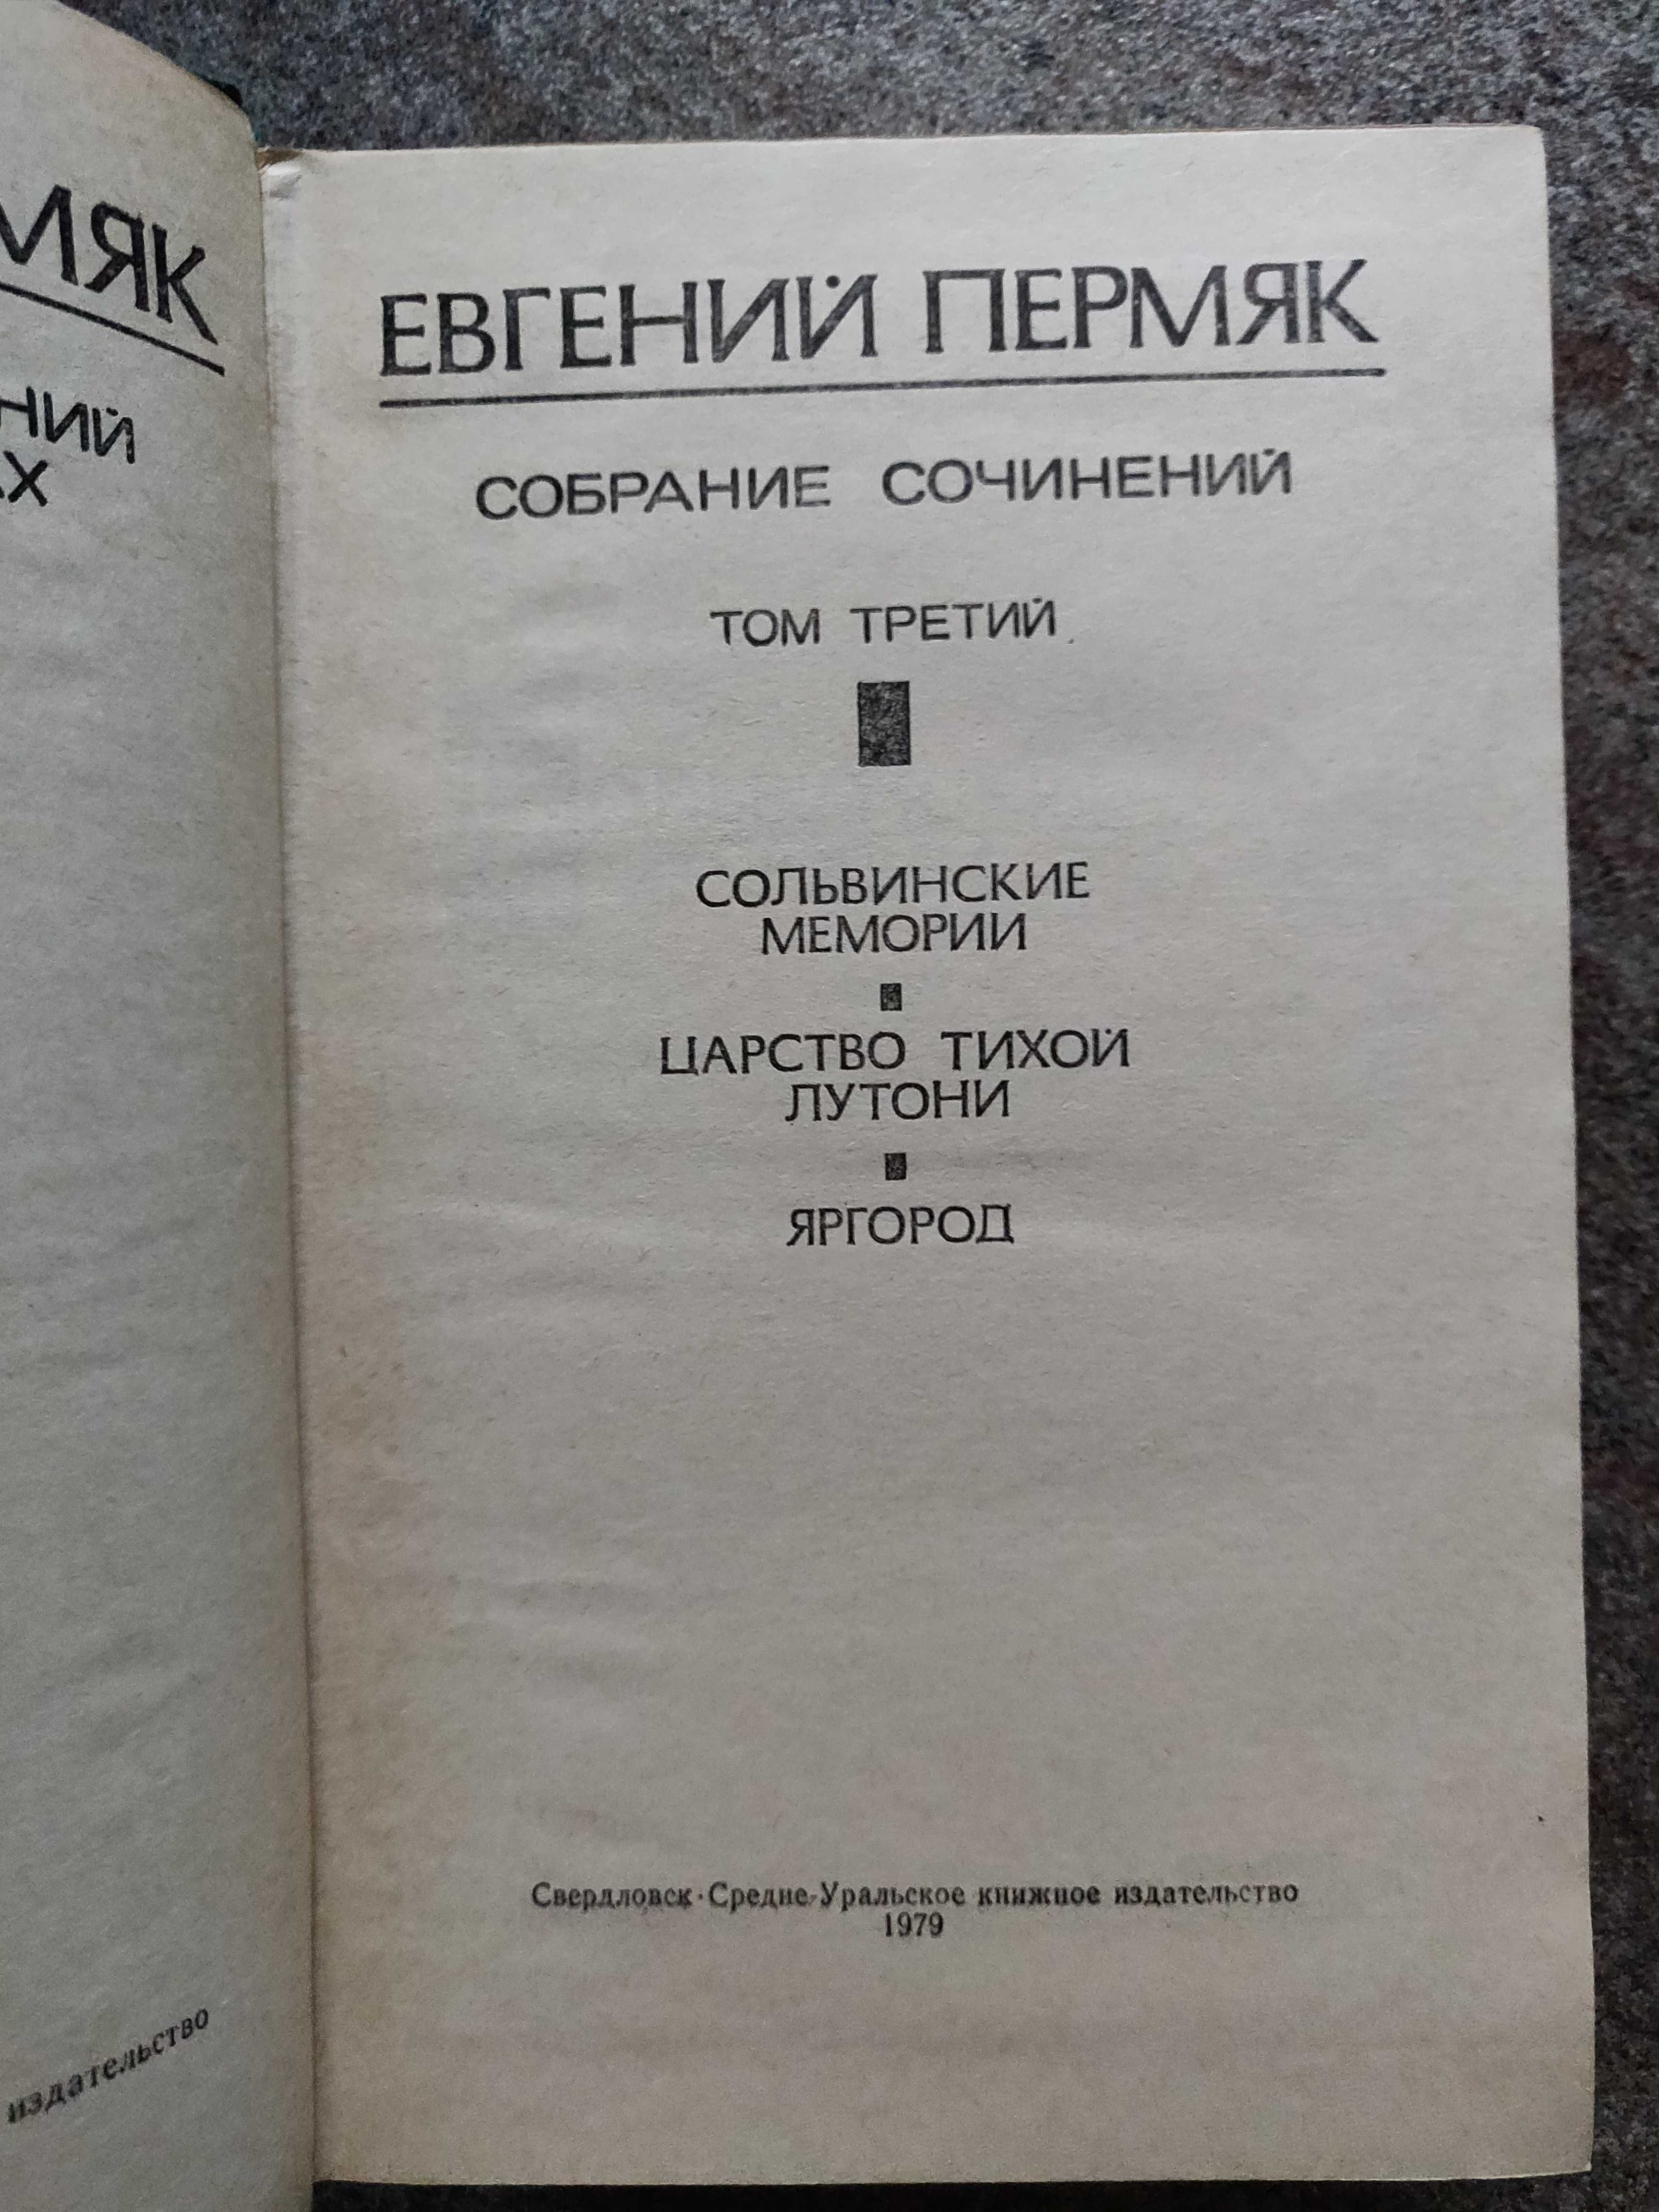 Пермяк Евгений собрание 4 томах 1977 г. идеальное  состояние